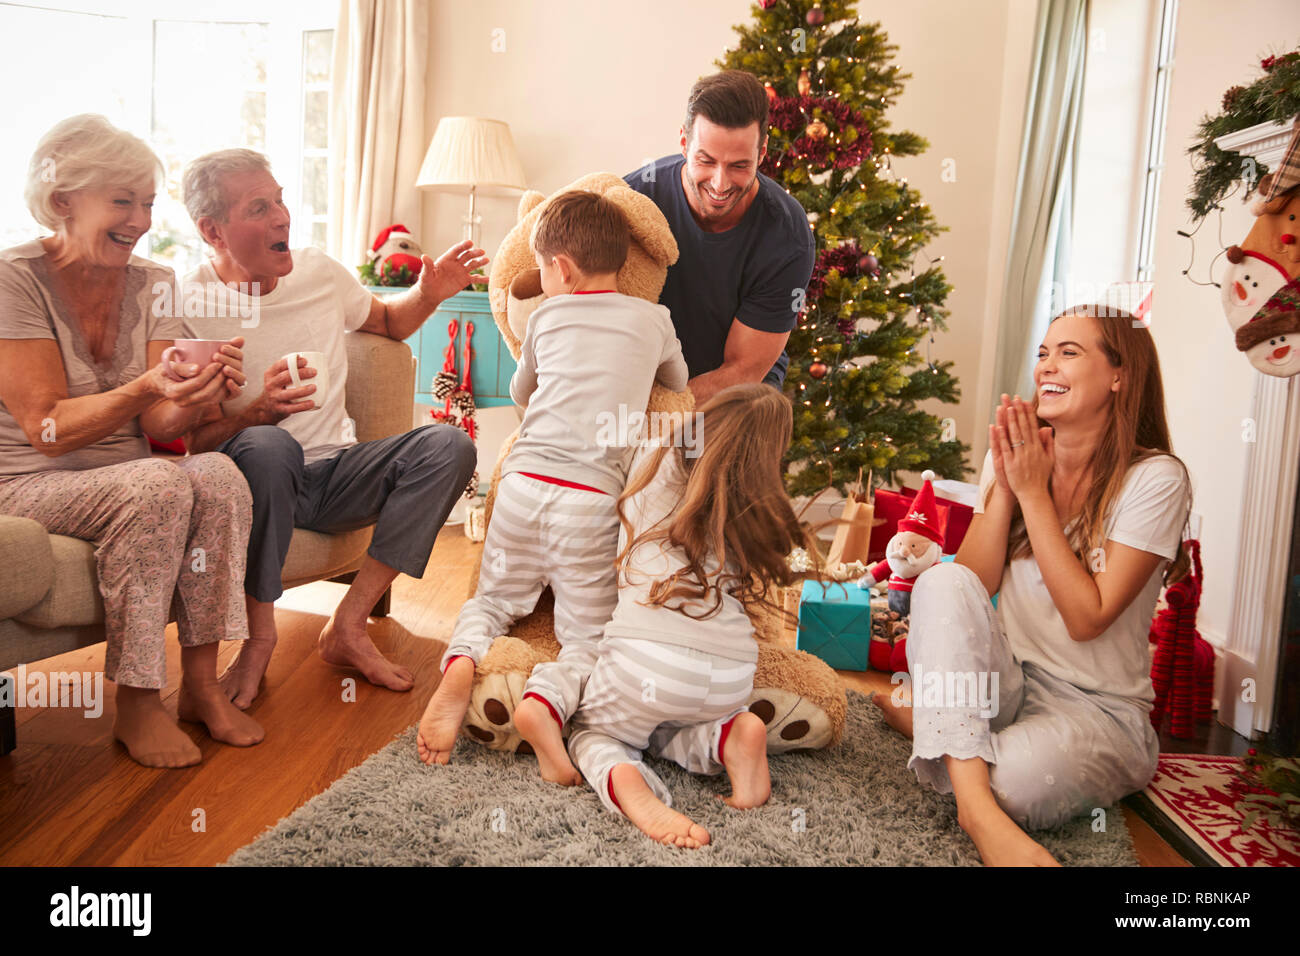 Niños jugando con Oso de peluche gigante como familia Multi-Generation abrir los regalos el Día de Navidad Foto de stock